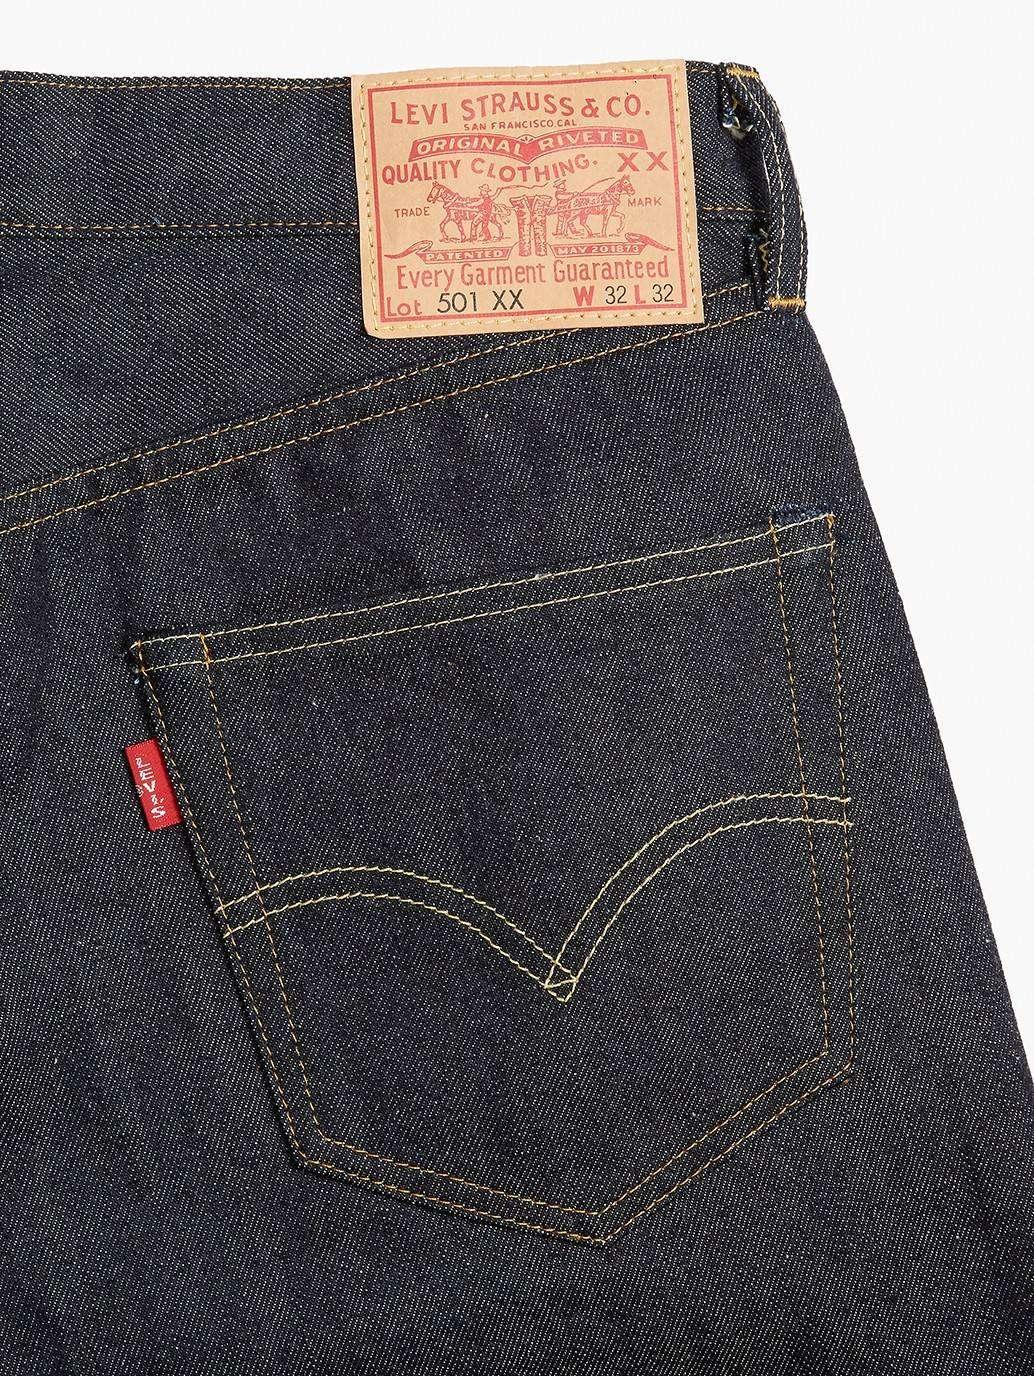 levis malaysia Levis 1955 501 Jeans 501550055 13 Details